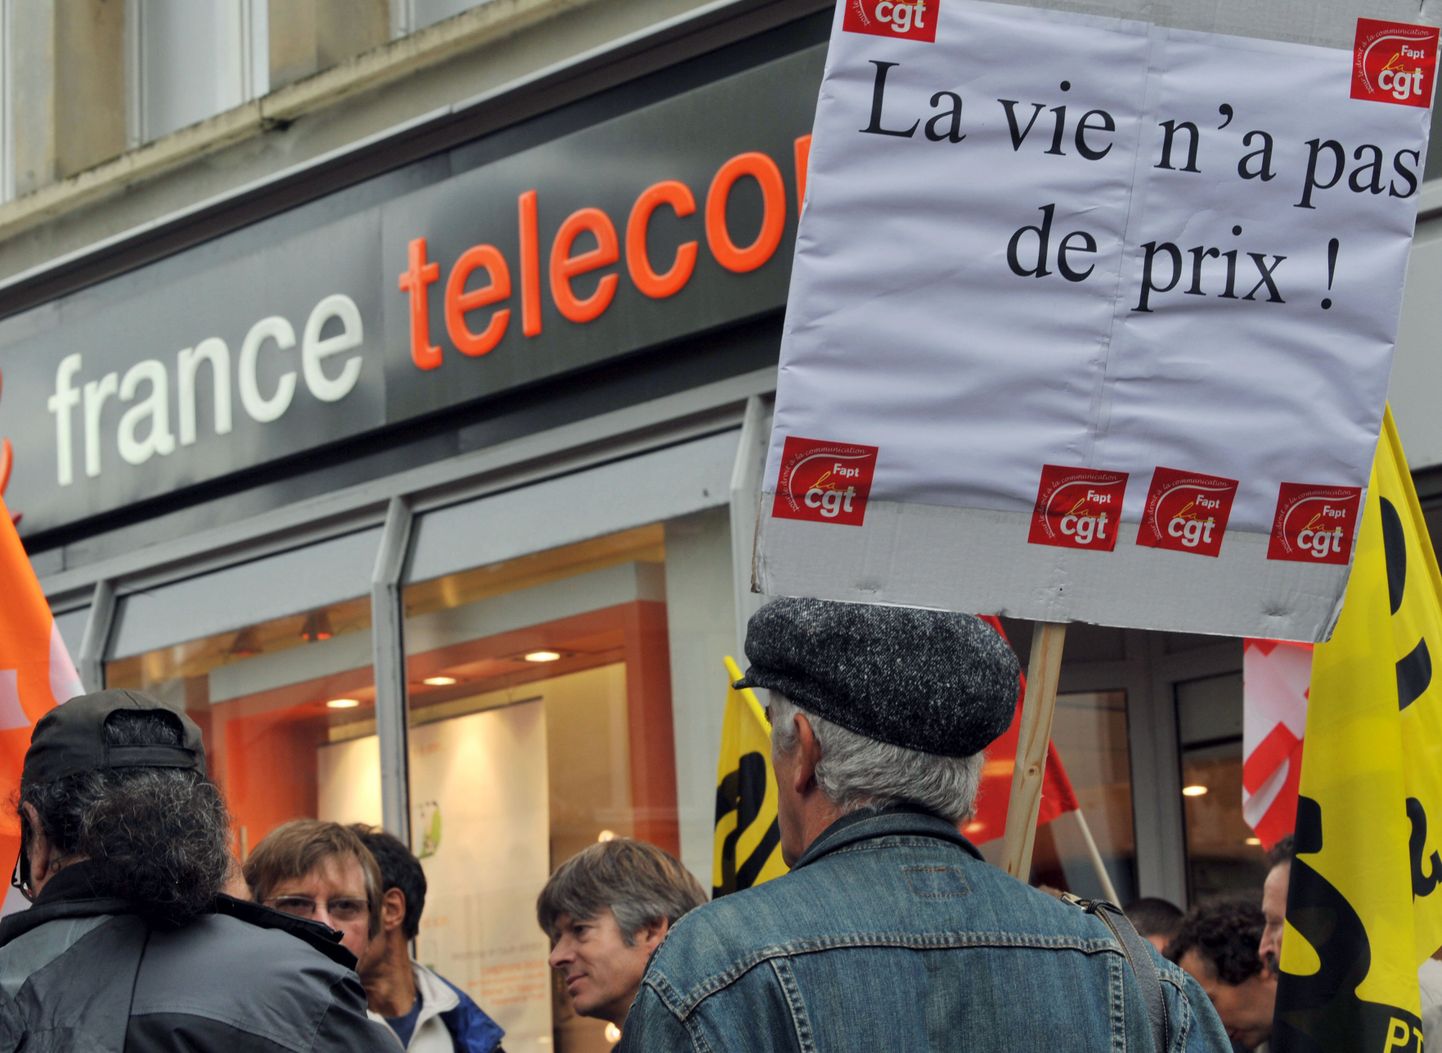 France Telecomi töötajad avaldamas meelt Caen'i linnas 6. oktoobril. «Elul pole hinda!» seisab loosungil.